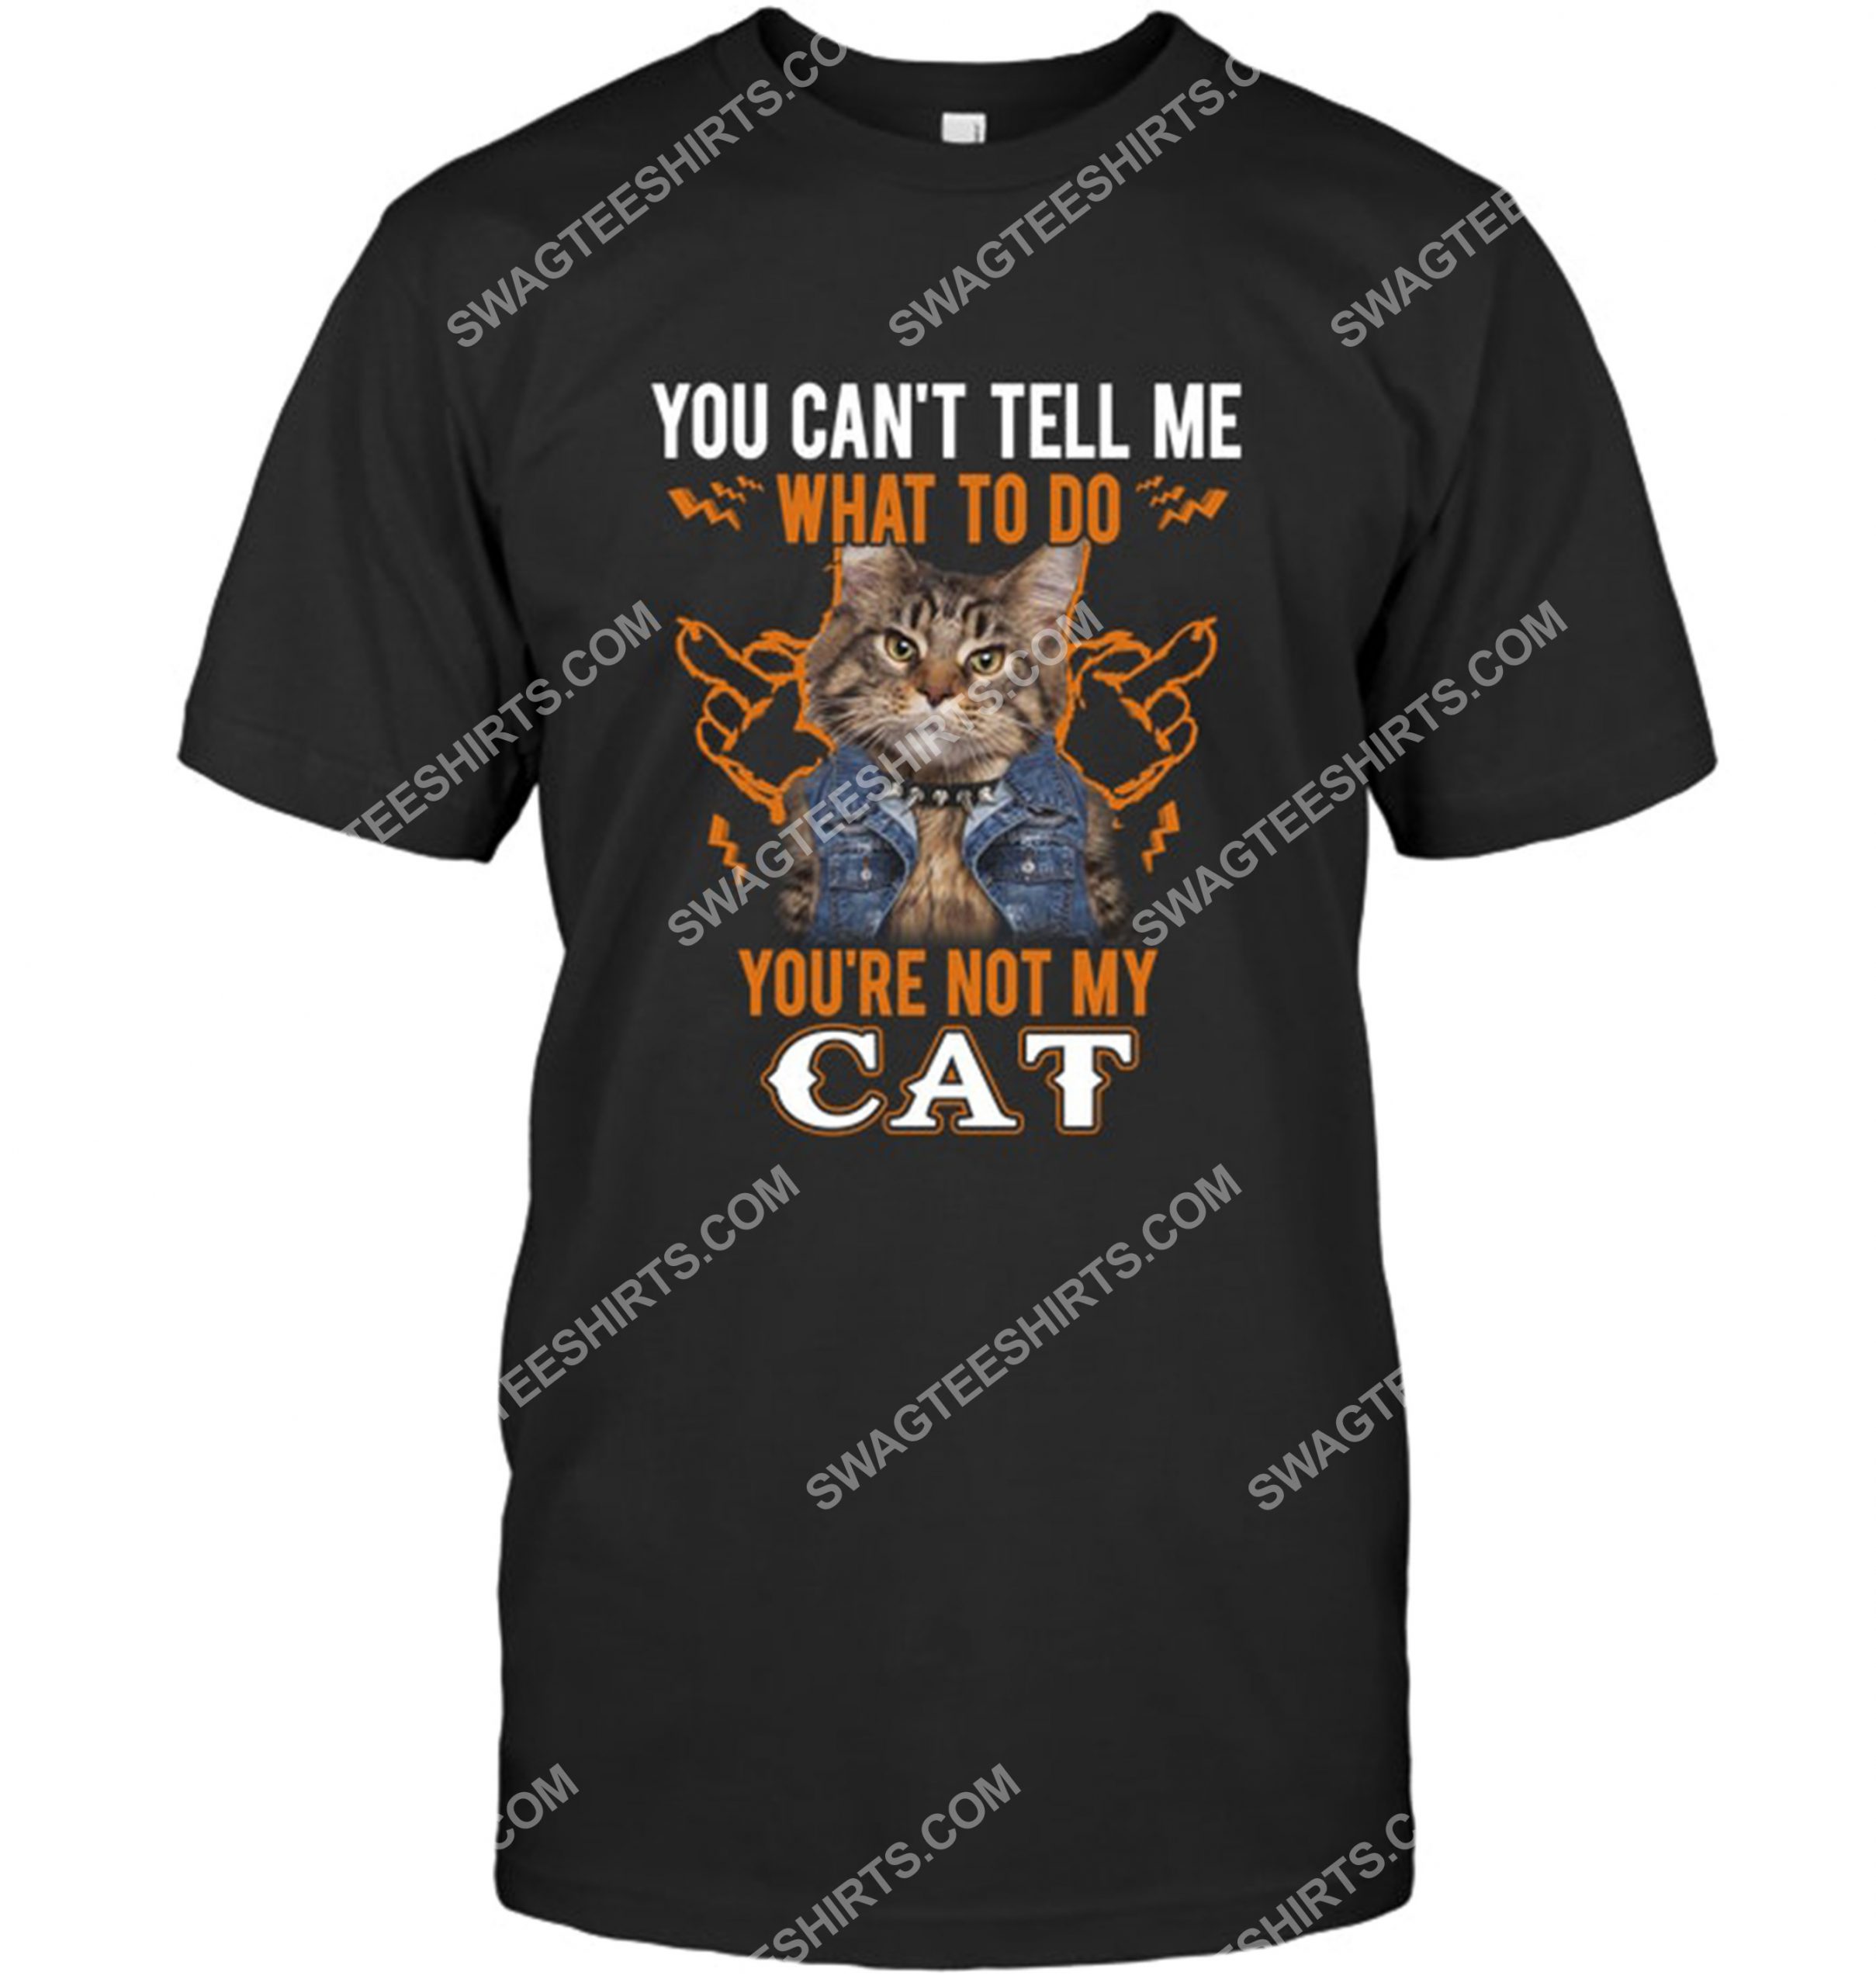 you can’t tell me what to do you’re not my cat shirt 1(1)